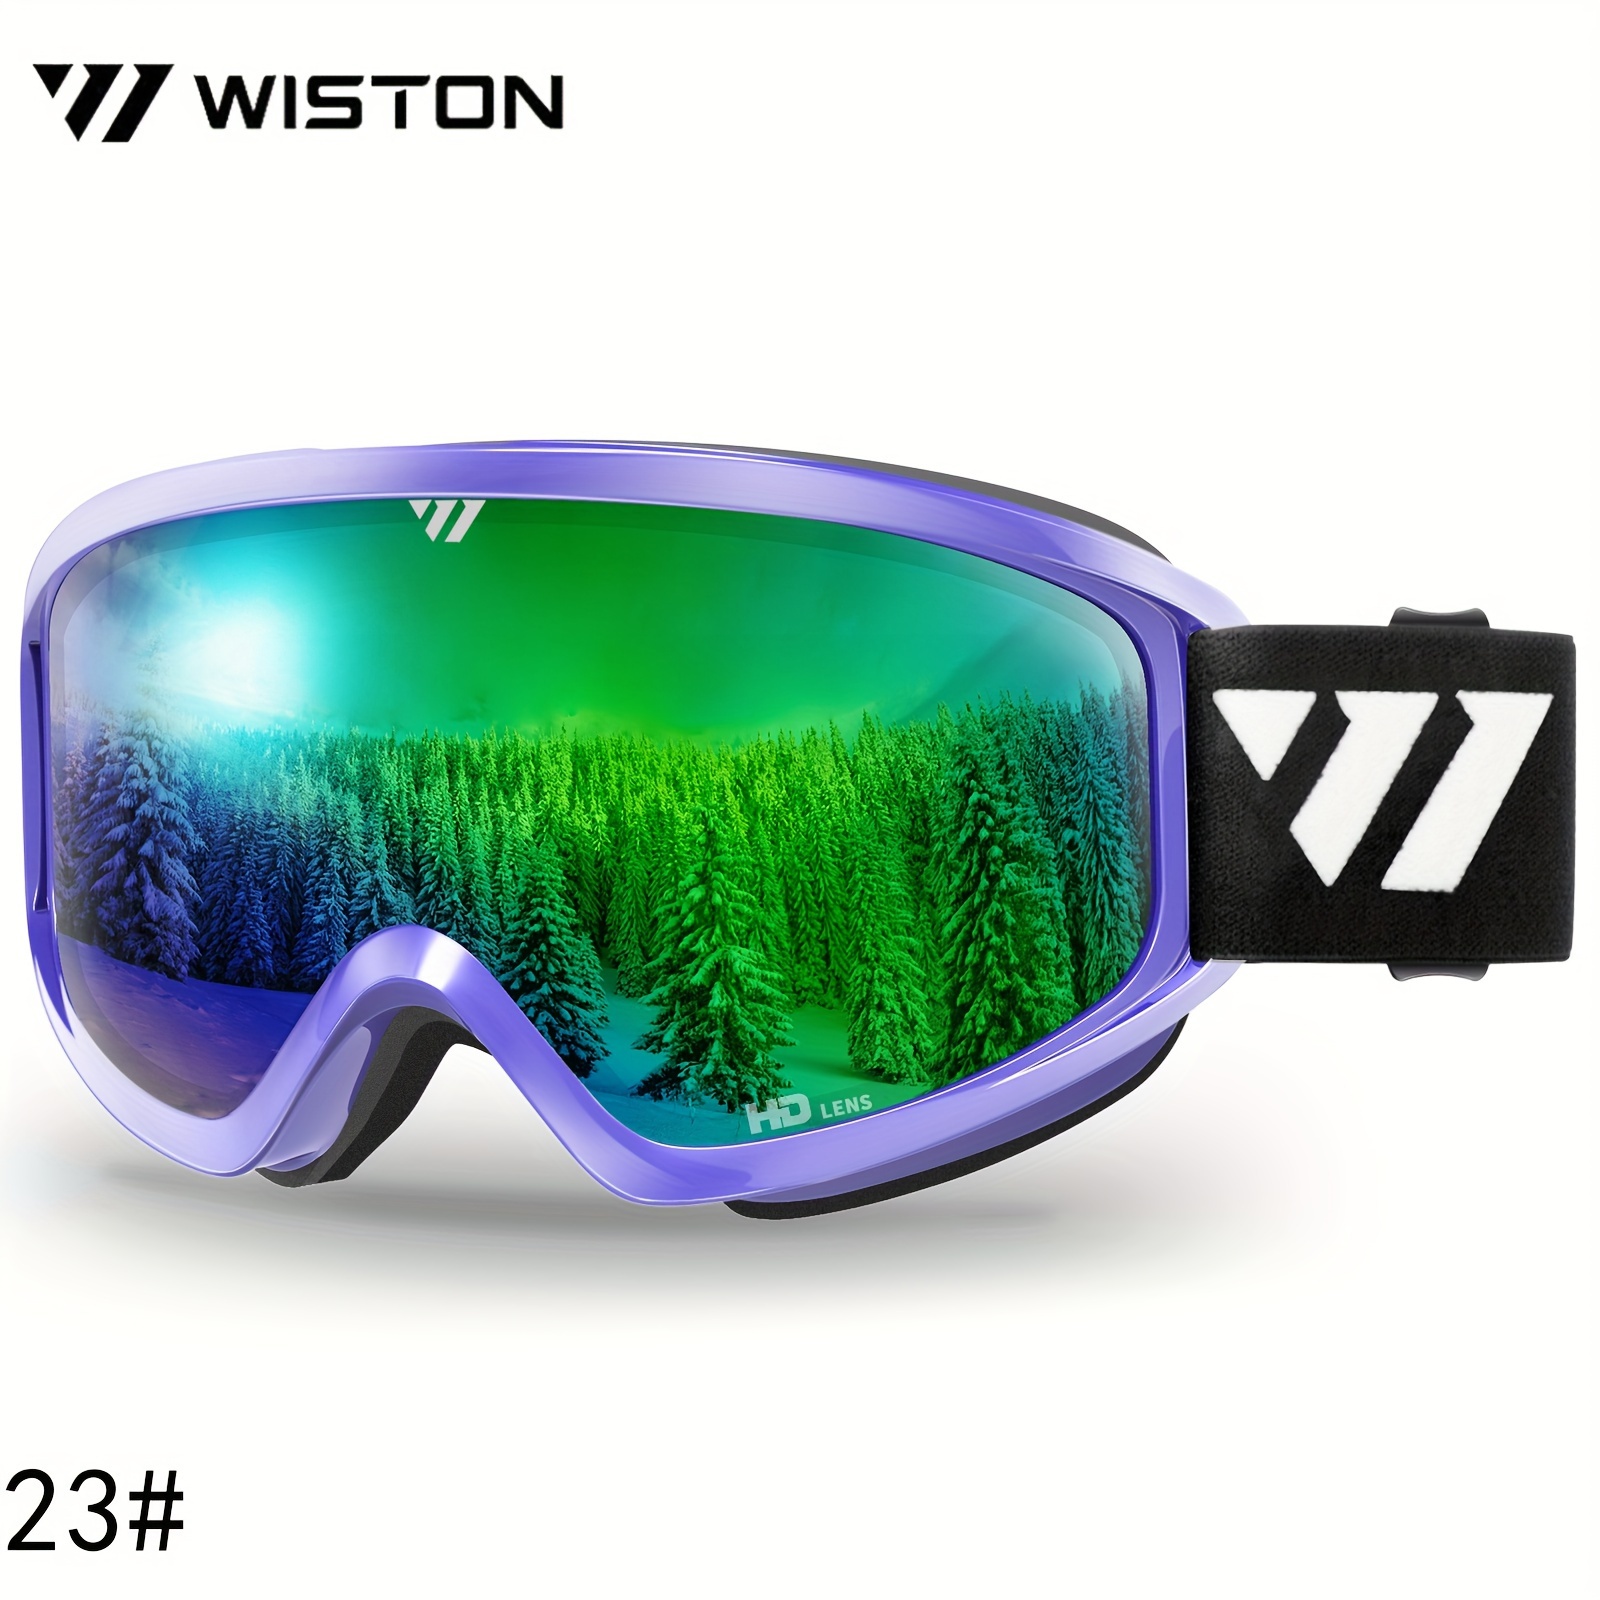  WISTON Ski Goggles - OTG Snow/Snowboard Goggles for